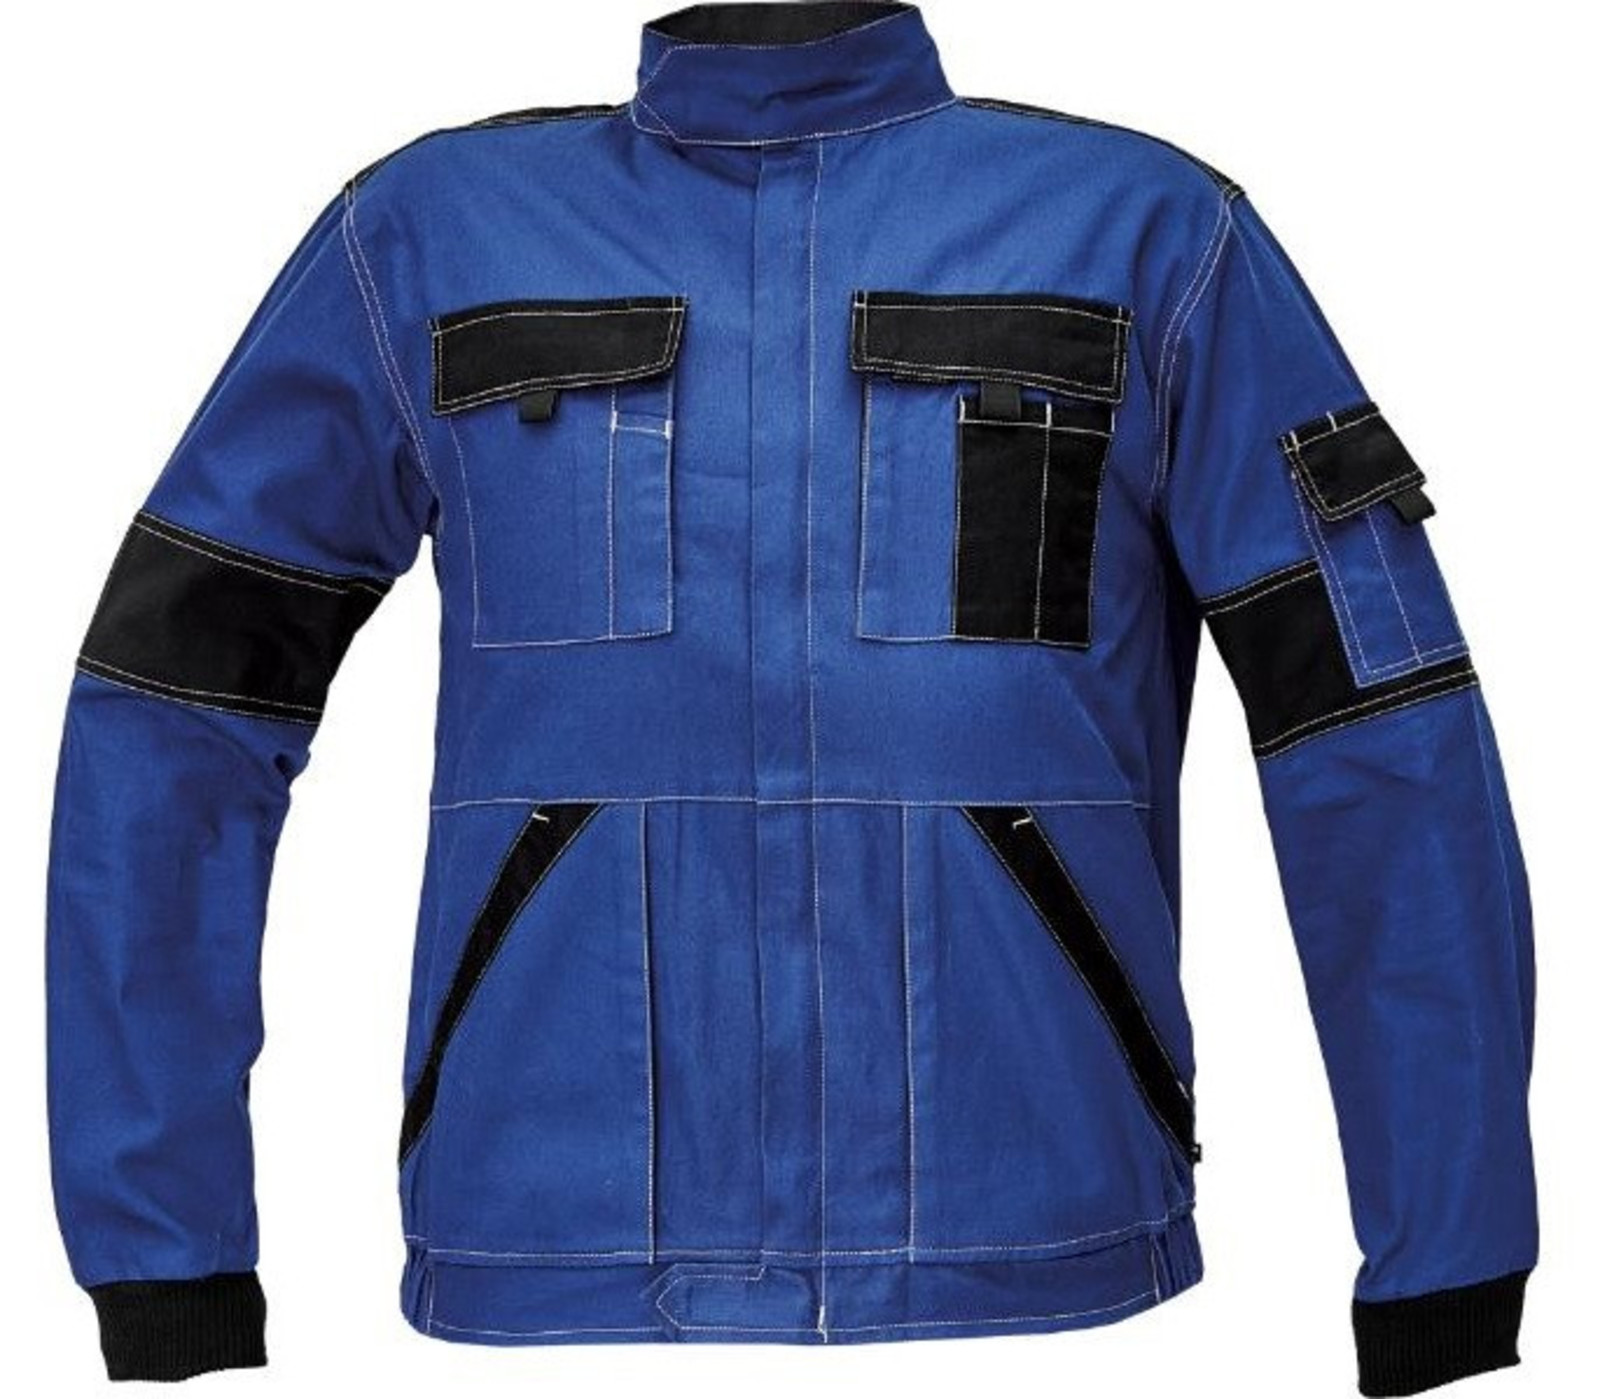 Tenšia bavlnená montérková bunda Max Summer  - veľkosť: 52, farba: modrá/čierna